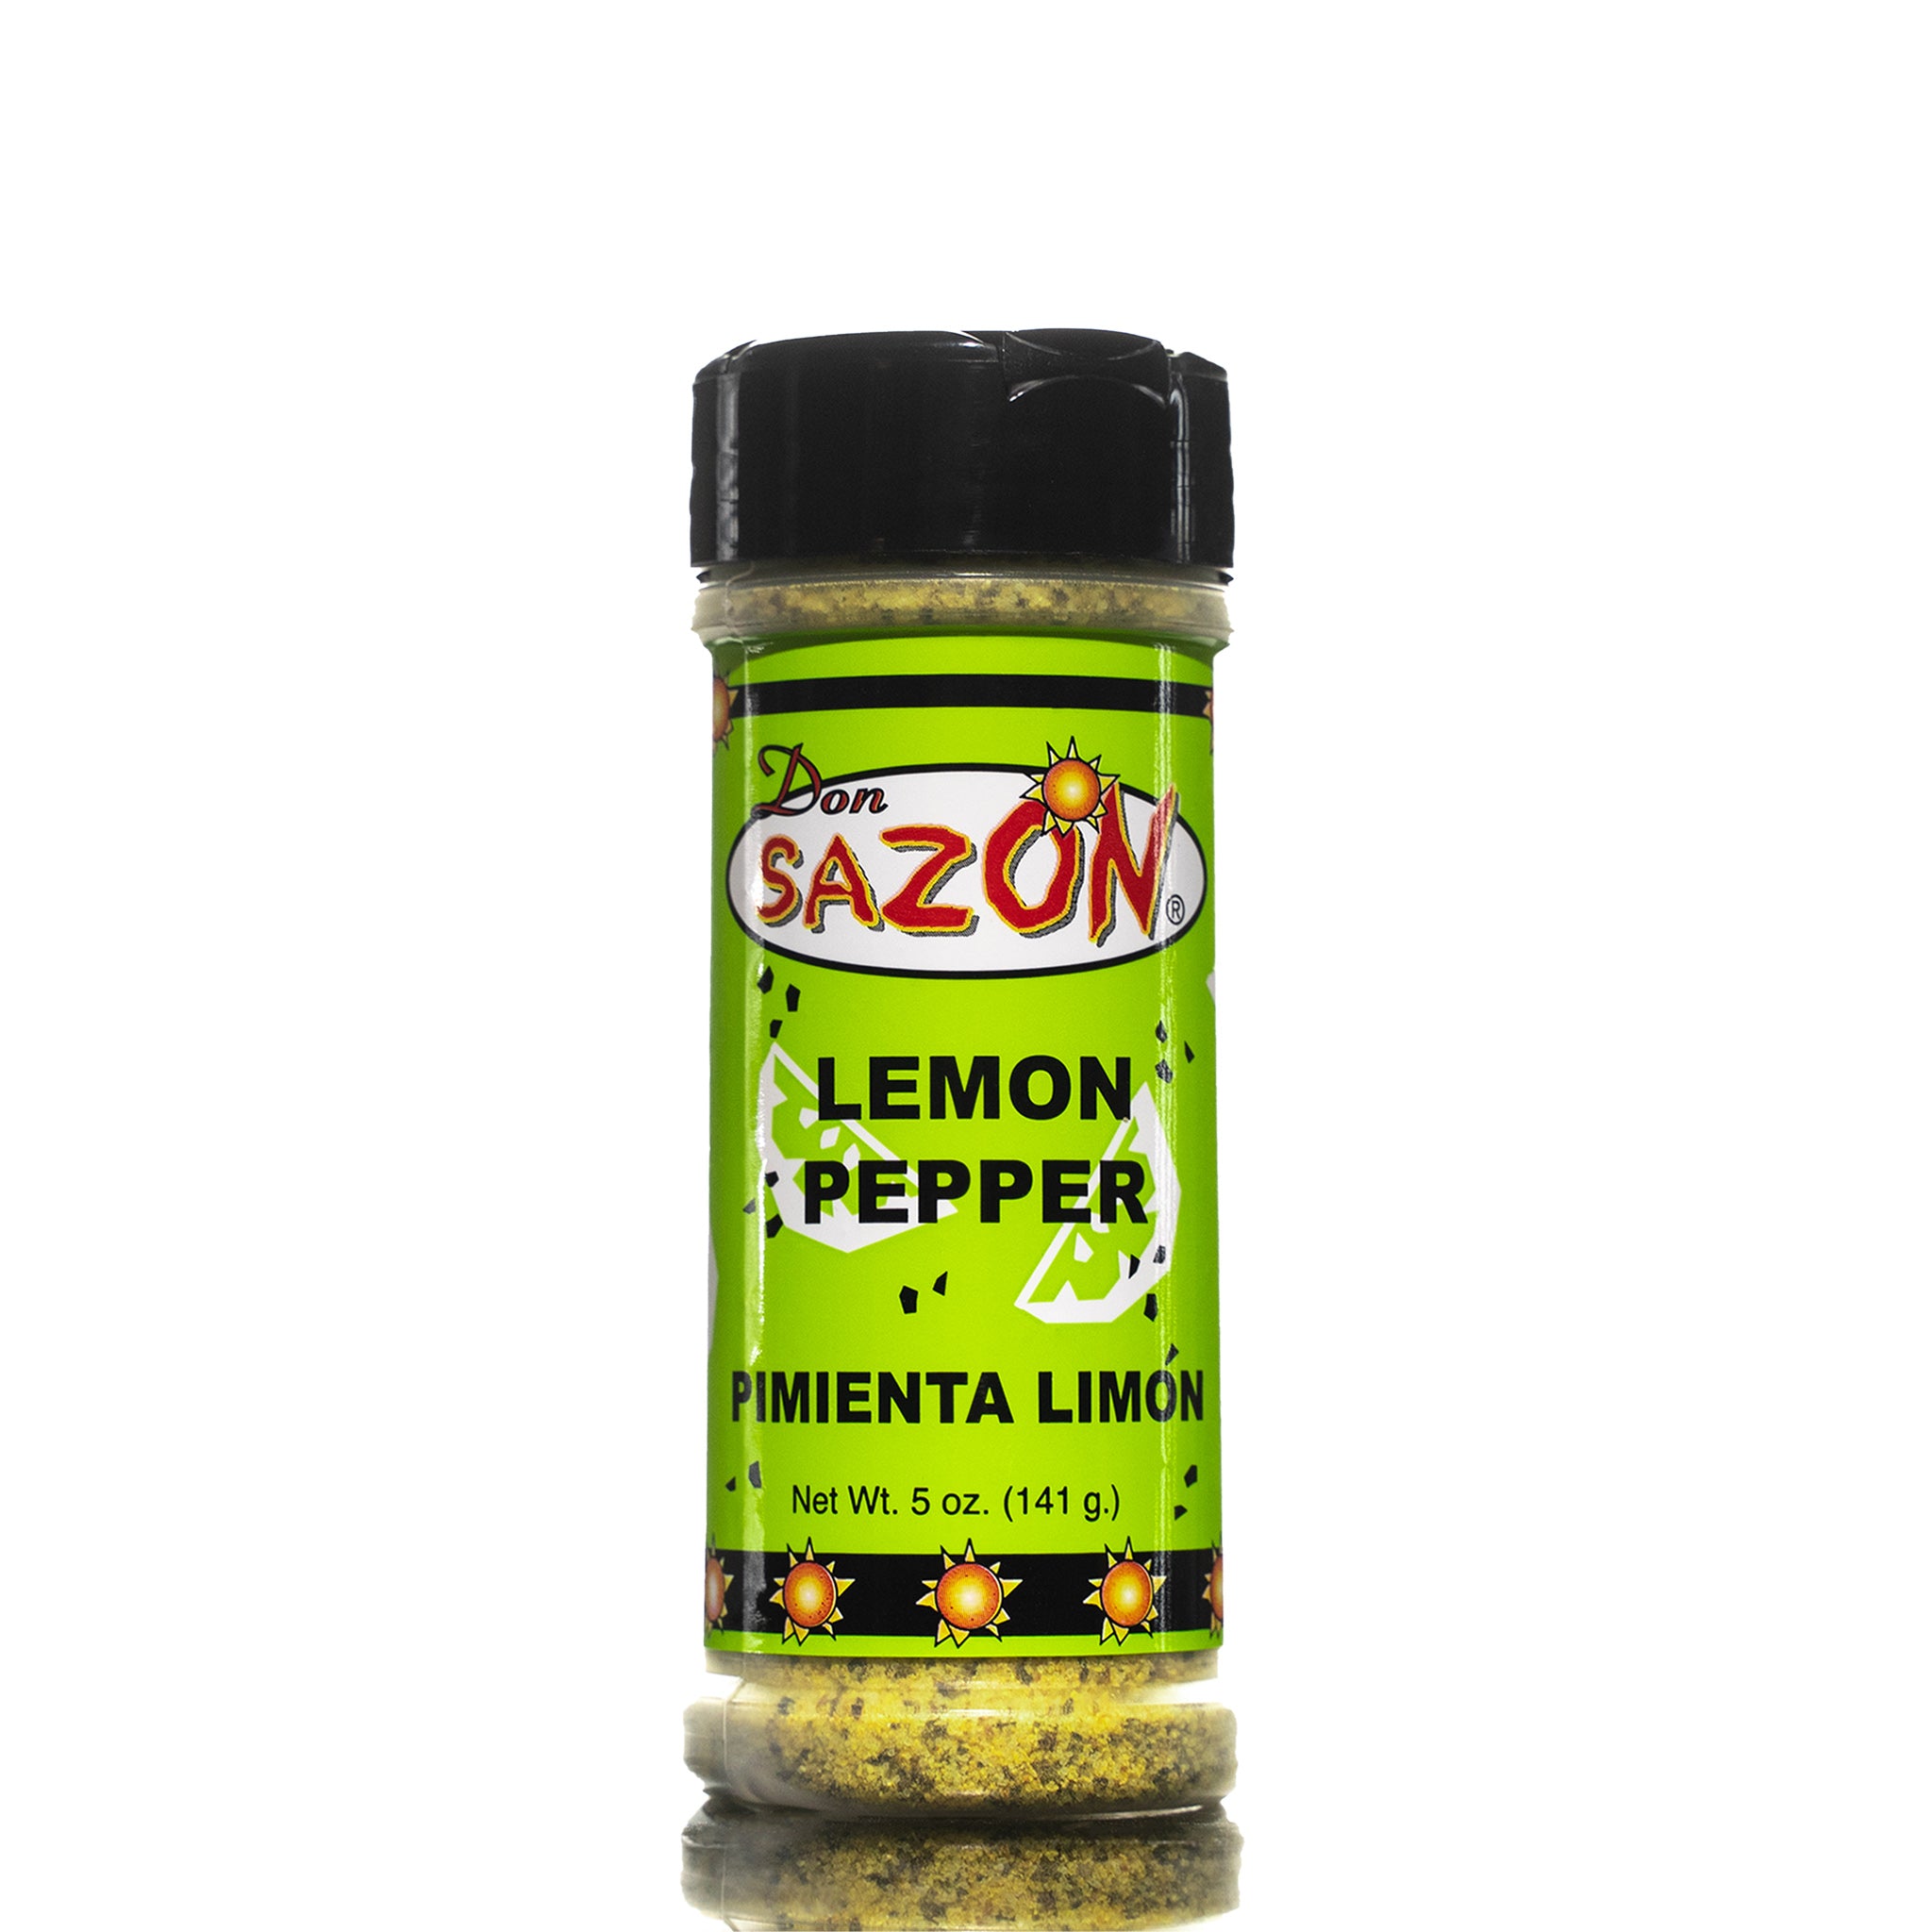 Sazonador lemon pepper 800G, lemon pepper